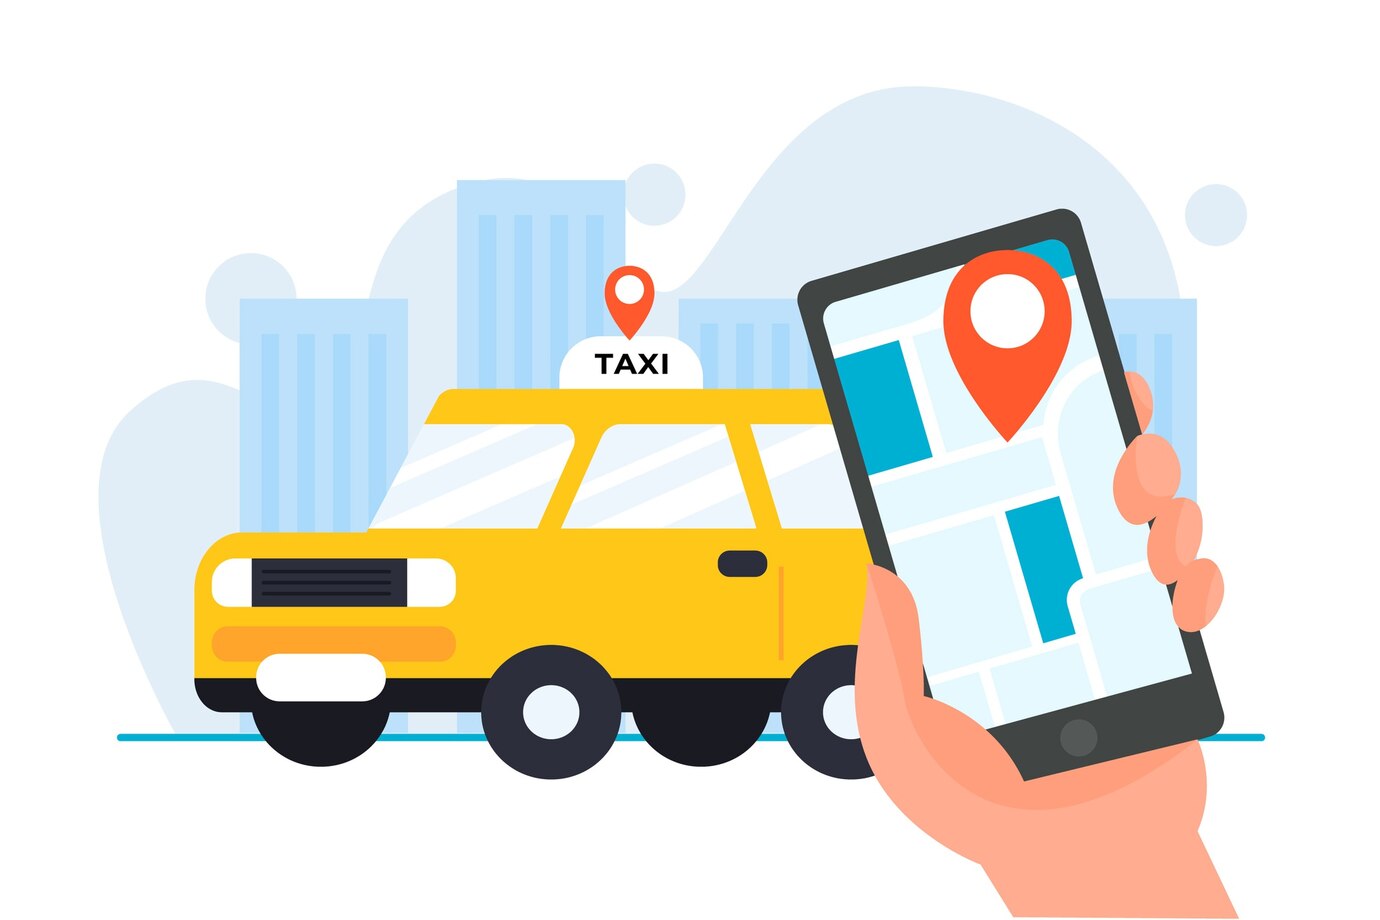 Optimice sus operaciones de taxi: desarrollo de aplicaciones de taxi de marca blanca - World News Fox